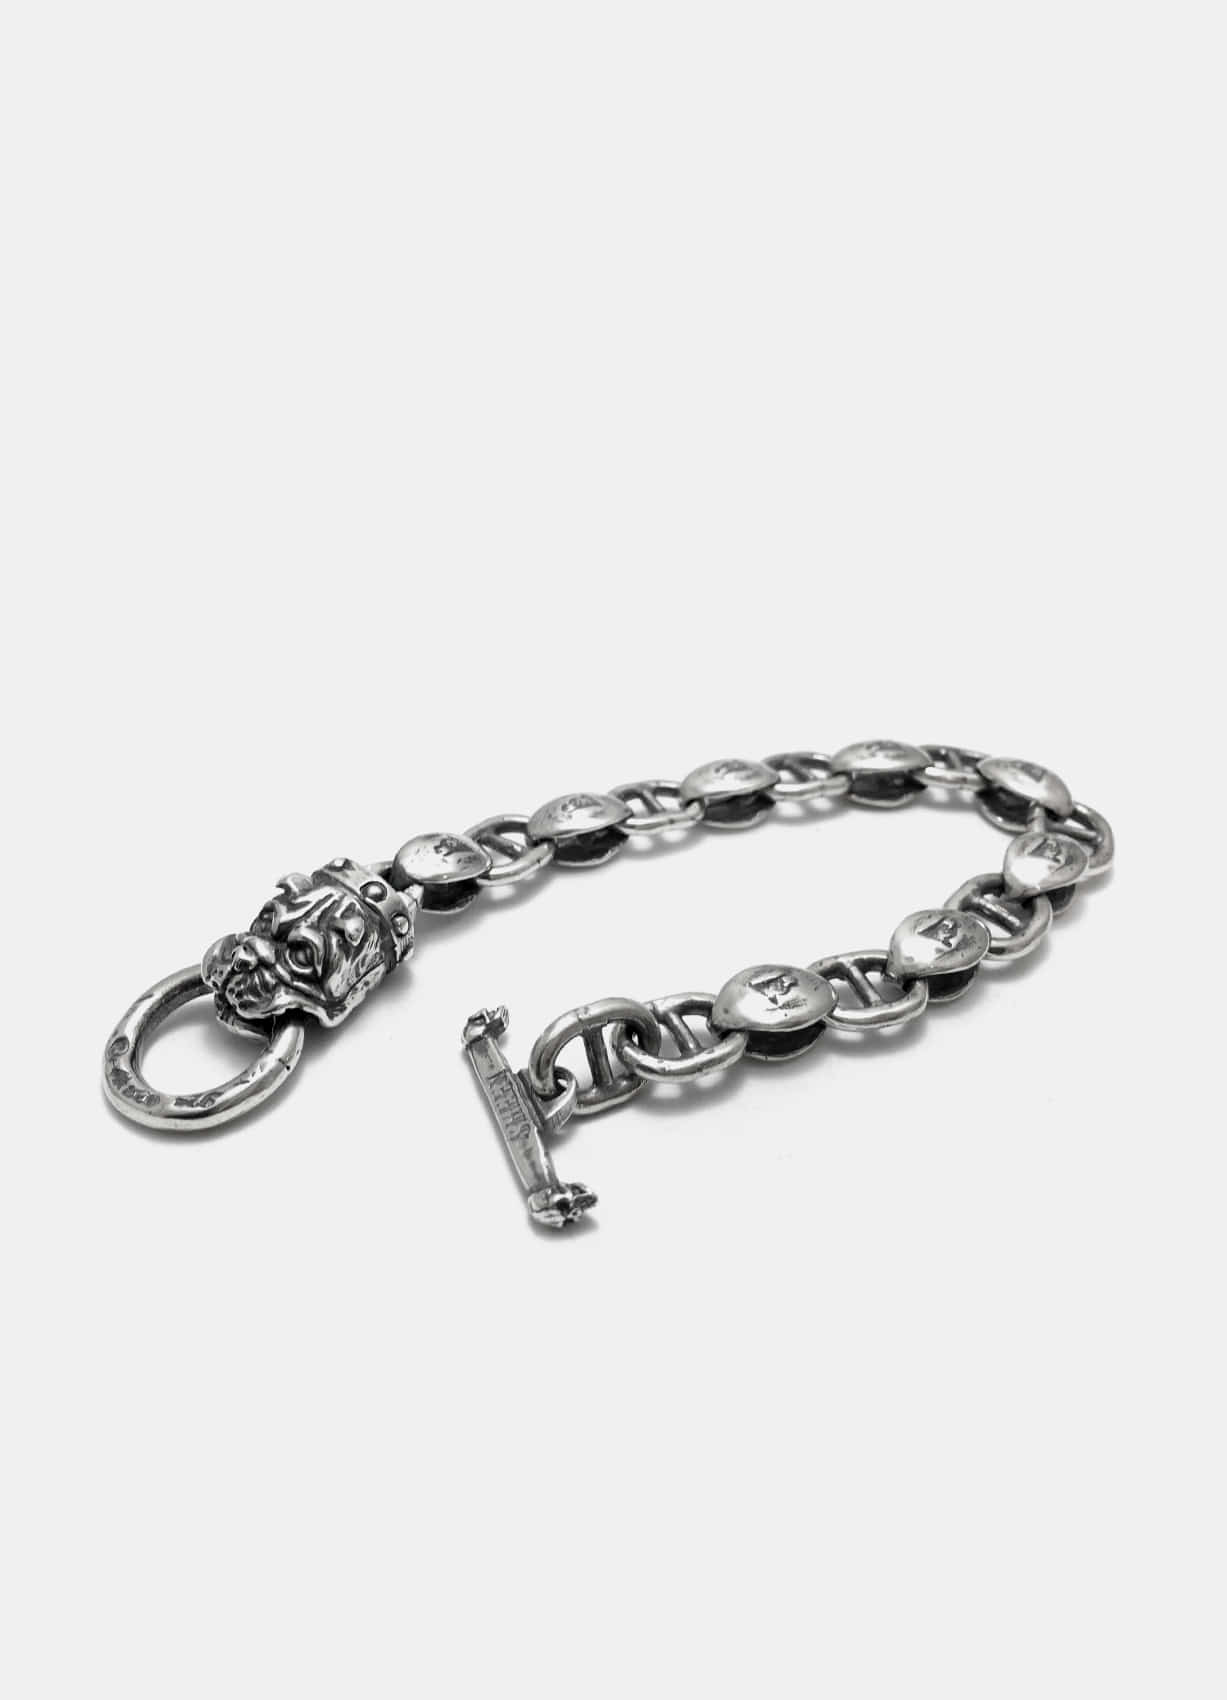 Bulldog Silver Bracelet w/OG Chains